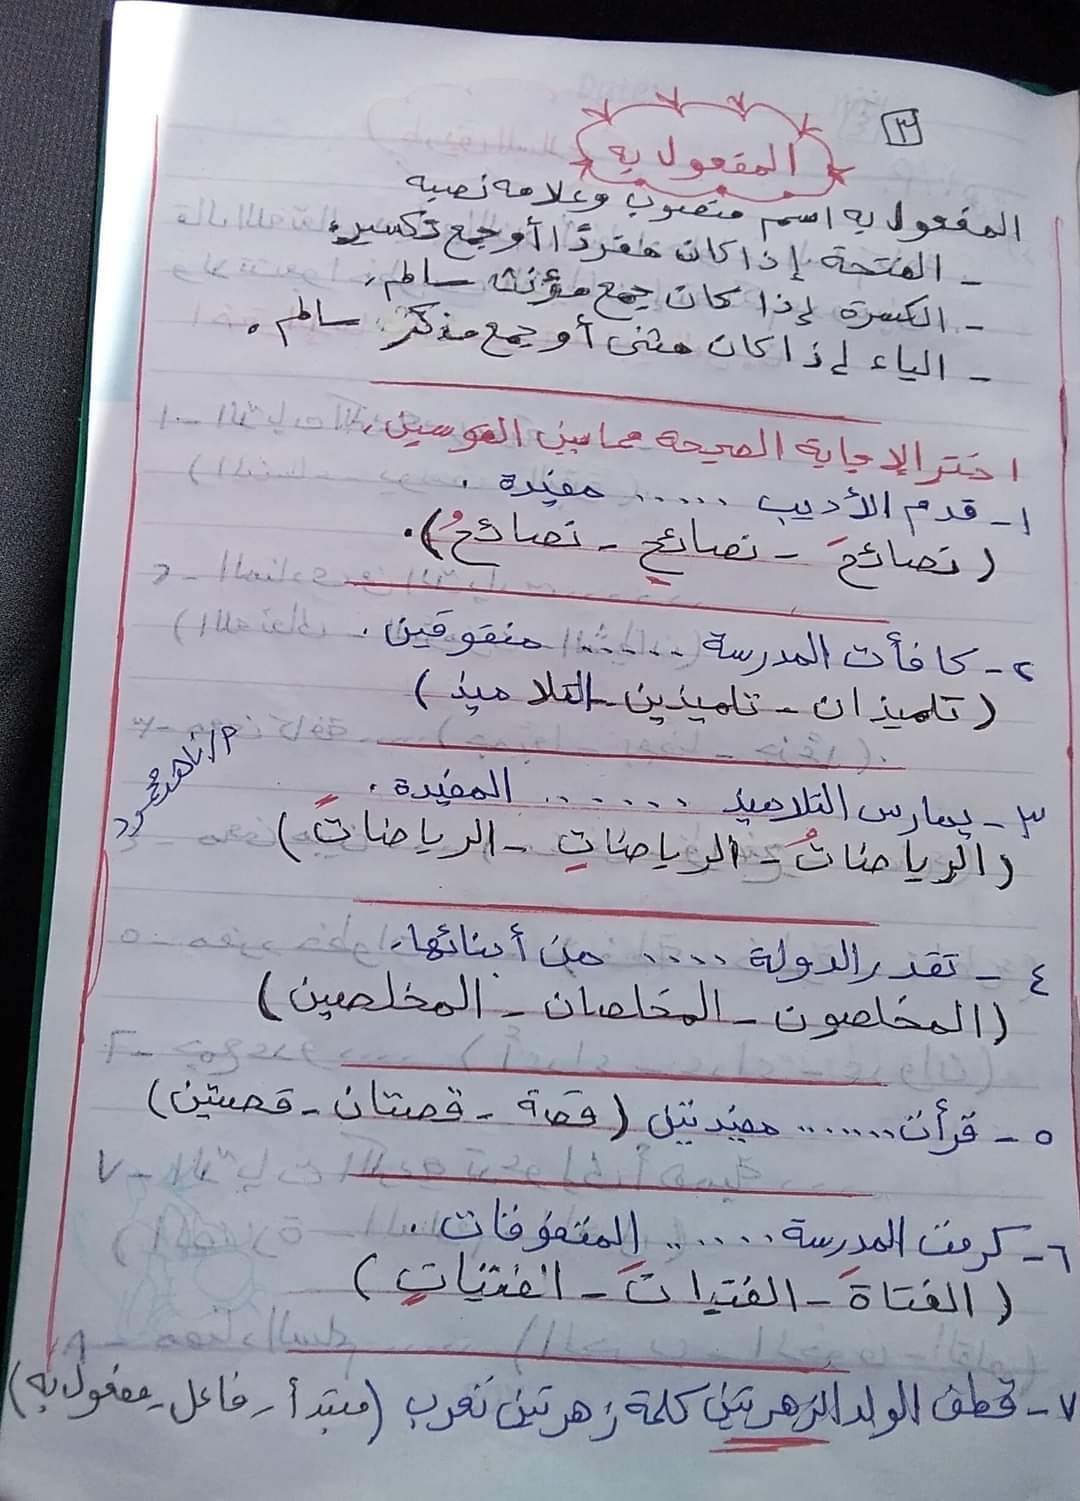  مراجعة منهج شهر مارس  لغة عربية (اختيار من متعدد) بالاجابات للصف الخامس الابتدائى الترم الثانى 2021 3